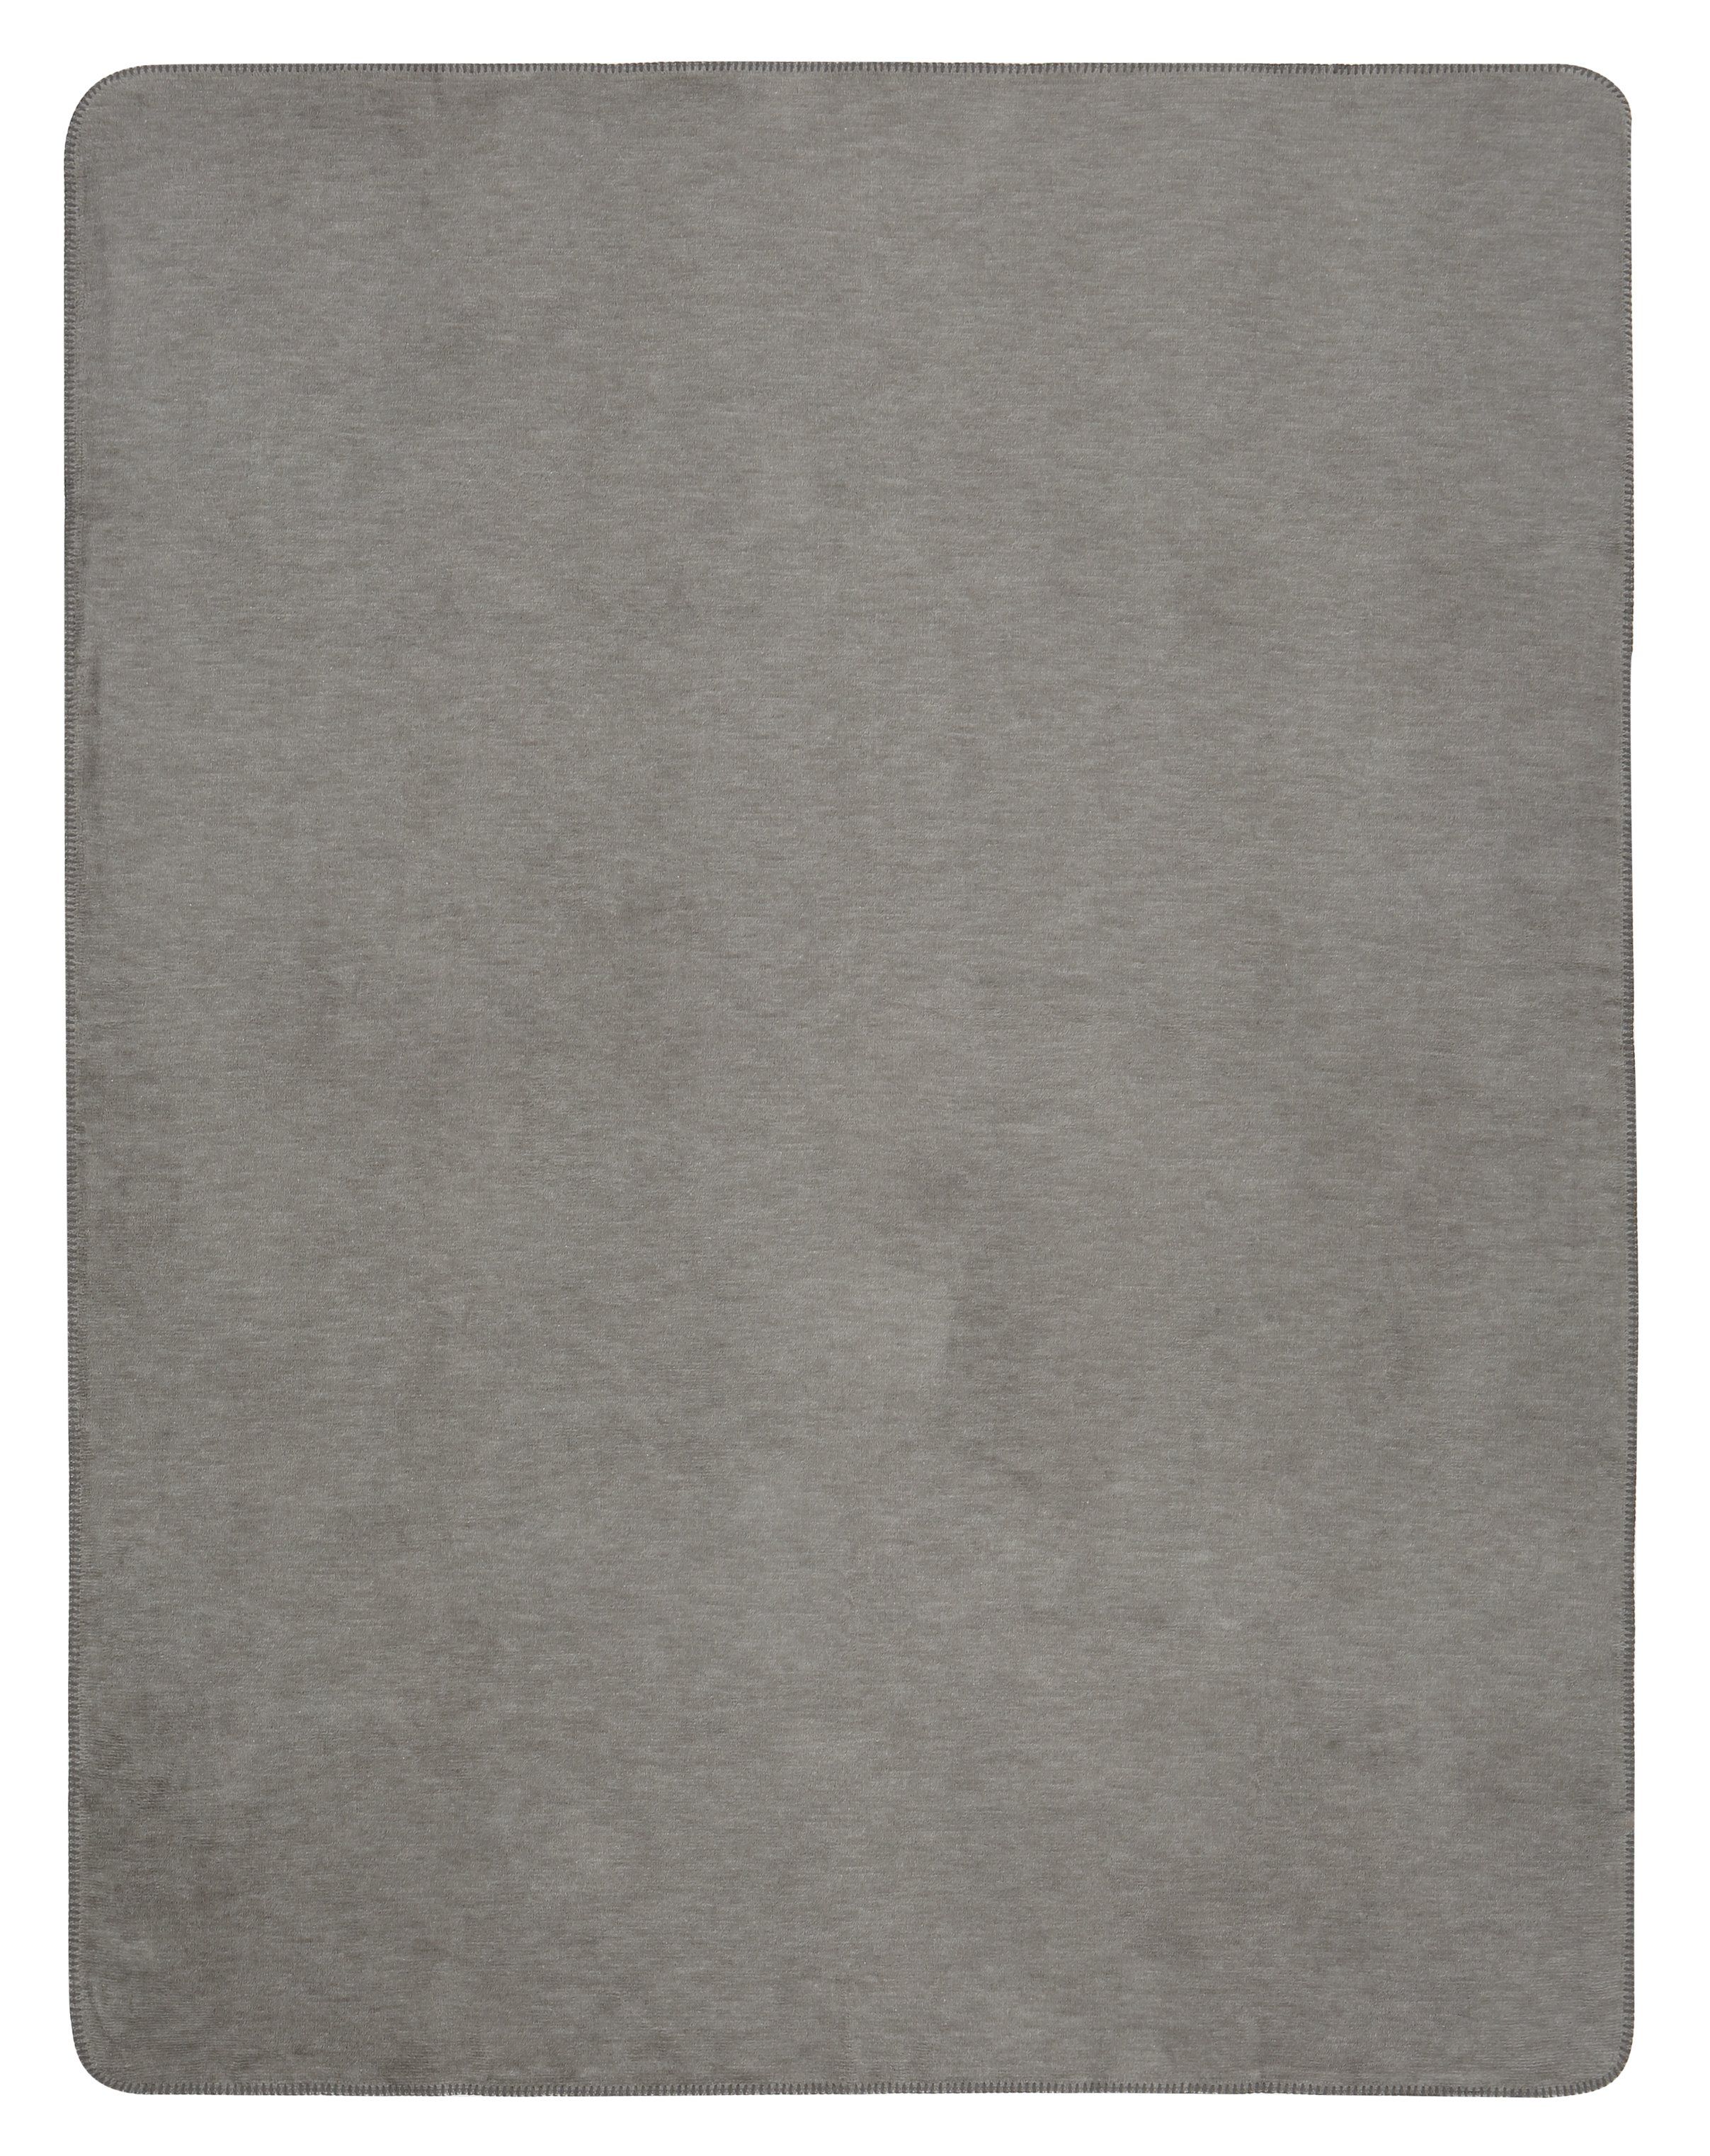 Wohndecke "Melange Doubleface" aus Baumwollmischgewebe in 150x200 cm in Natur-Graphit - Rückseite